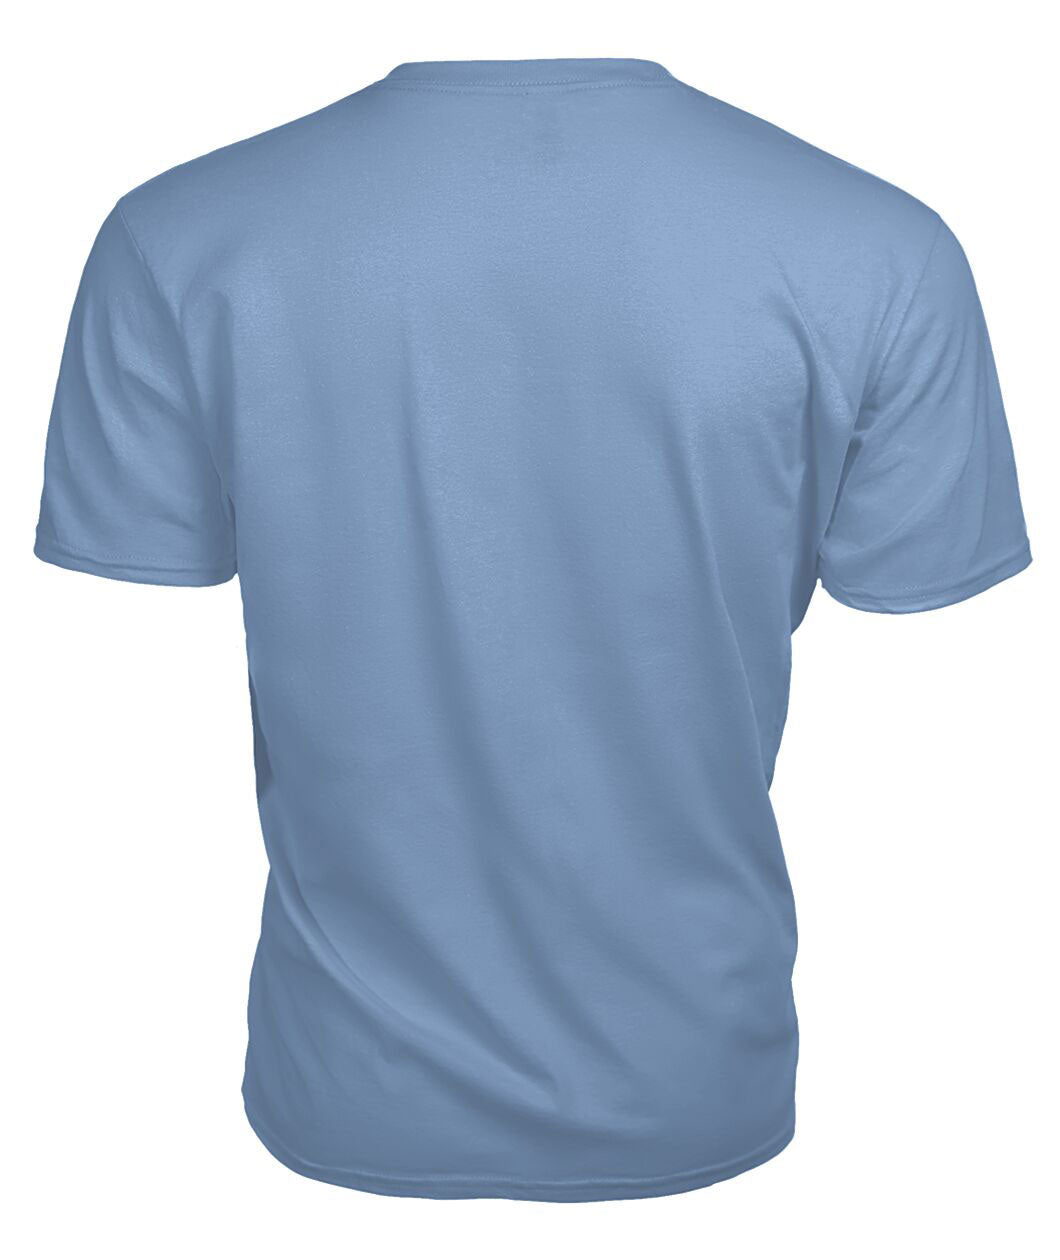 Scott Brown Modern Tartan Crest 2D T-shirt - Blood Runs Through My Veins Style